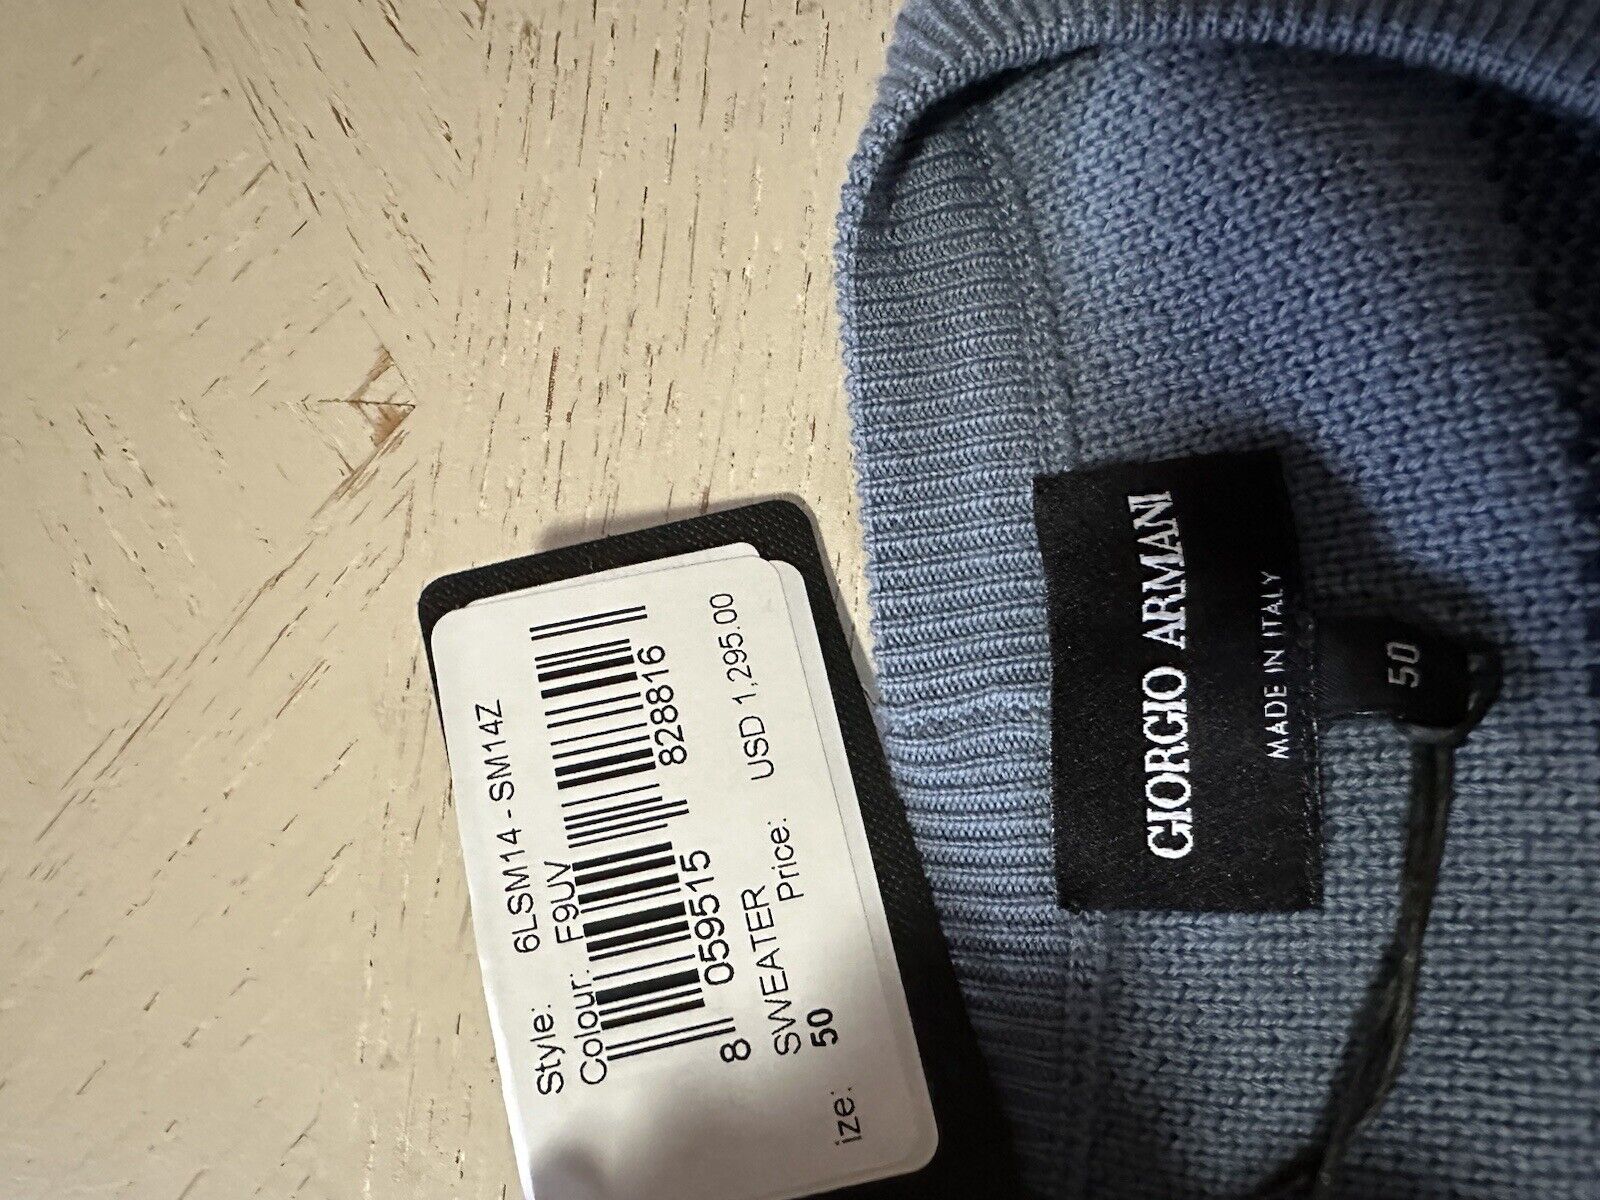 New $1295 Giorgio Armani Men’s Crewneck Sweater Blue/Green 50 US ( M ) Italy